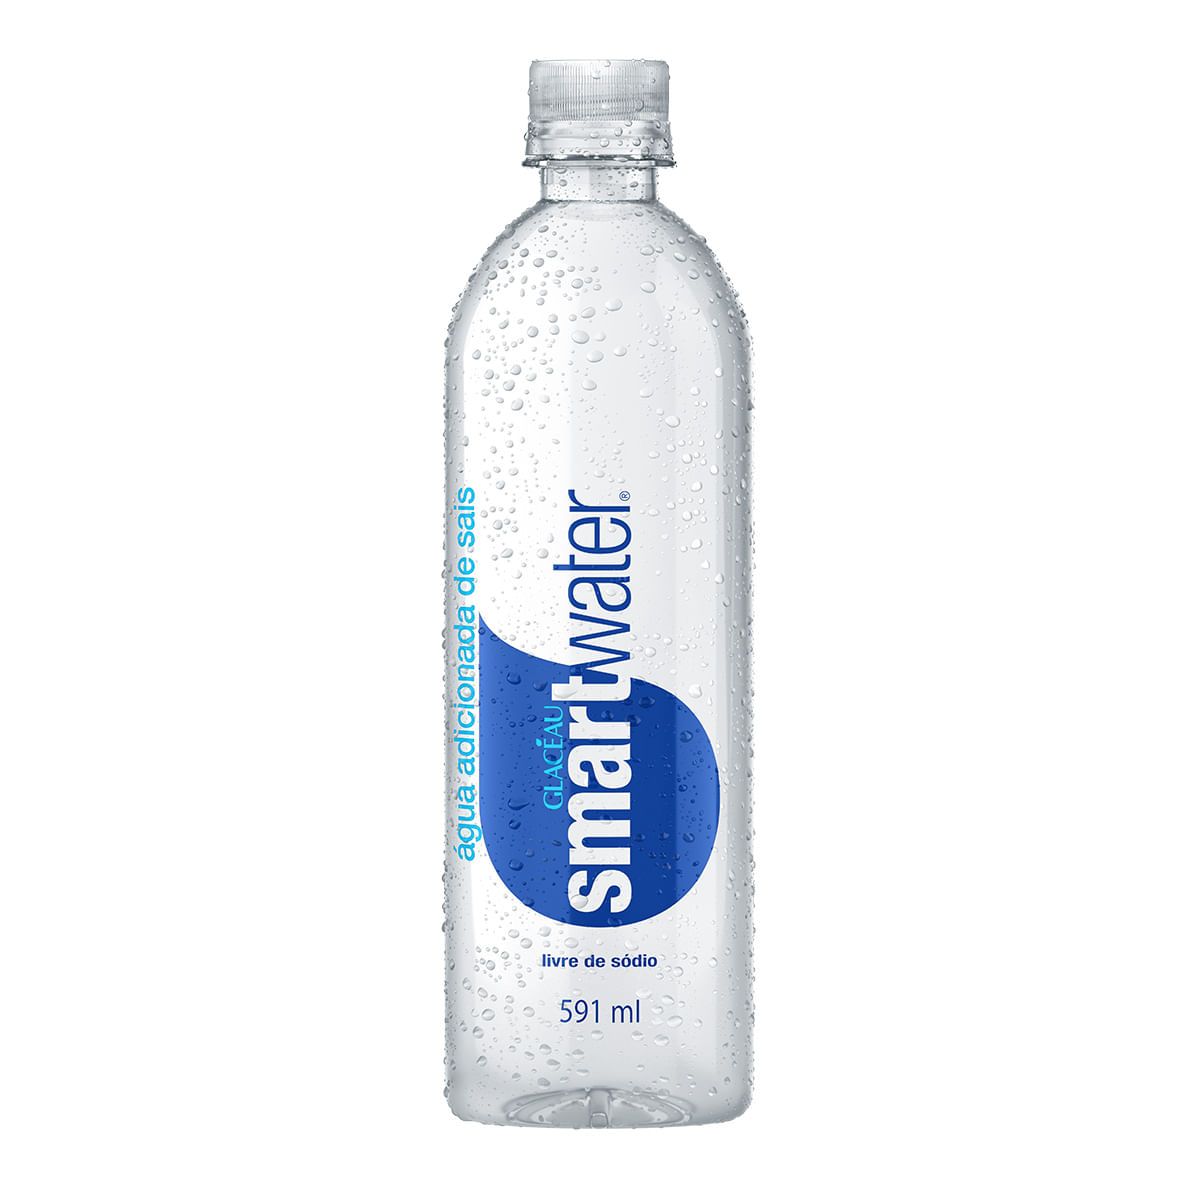 agua-sem-gas-smart-water-zero-sodio-garrafa-591ml-1.jpg